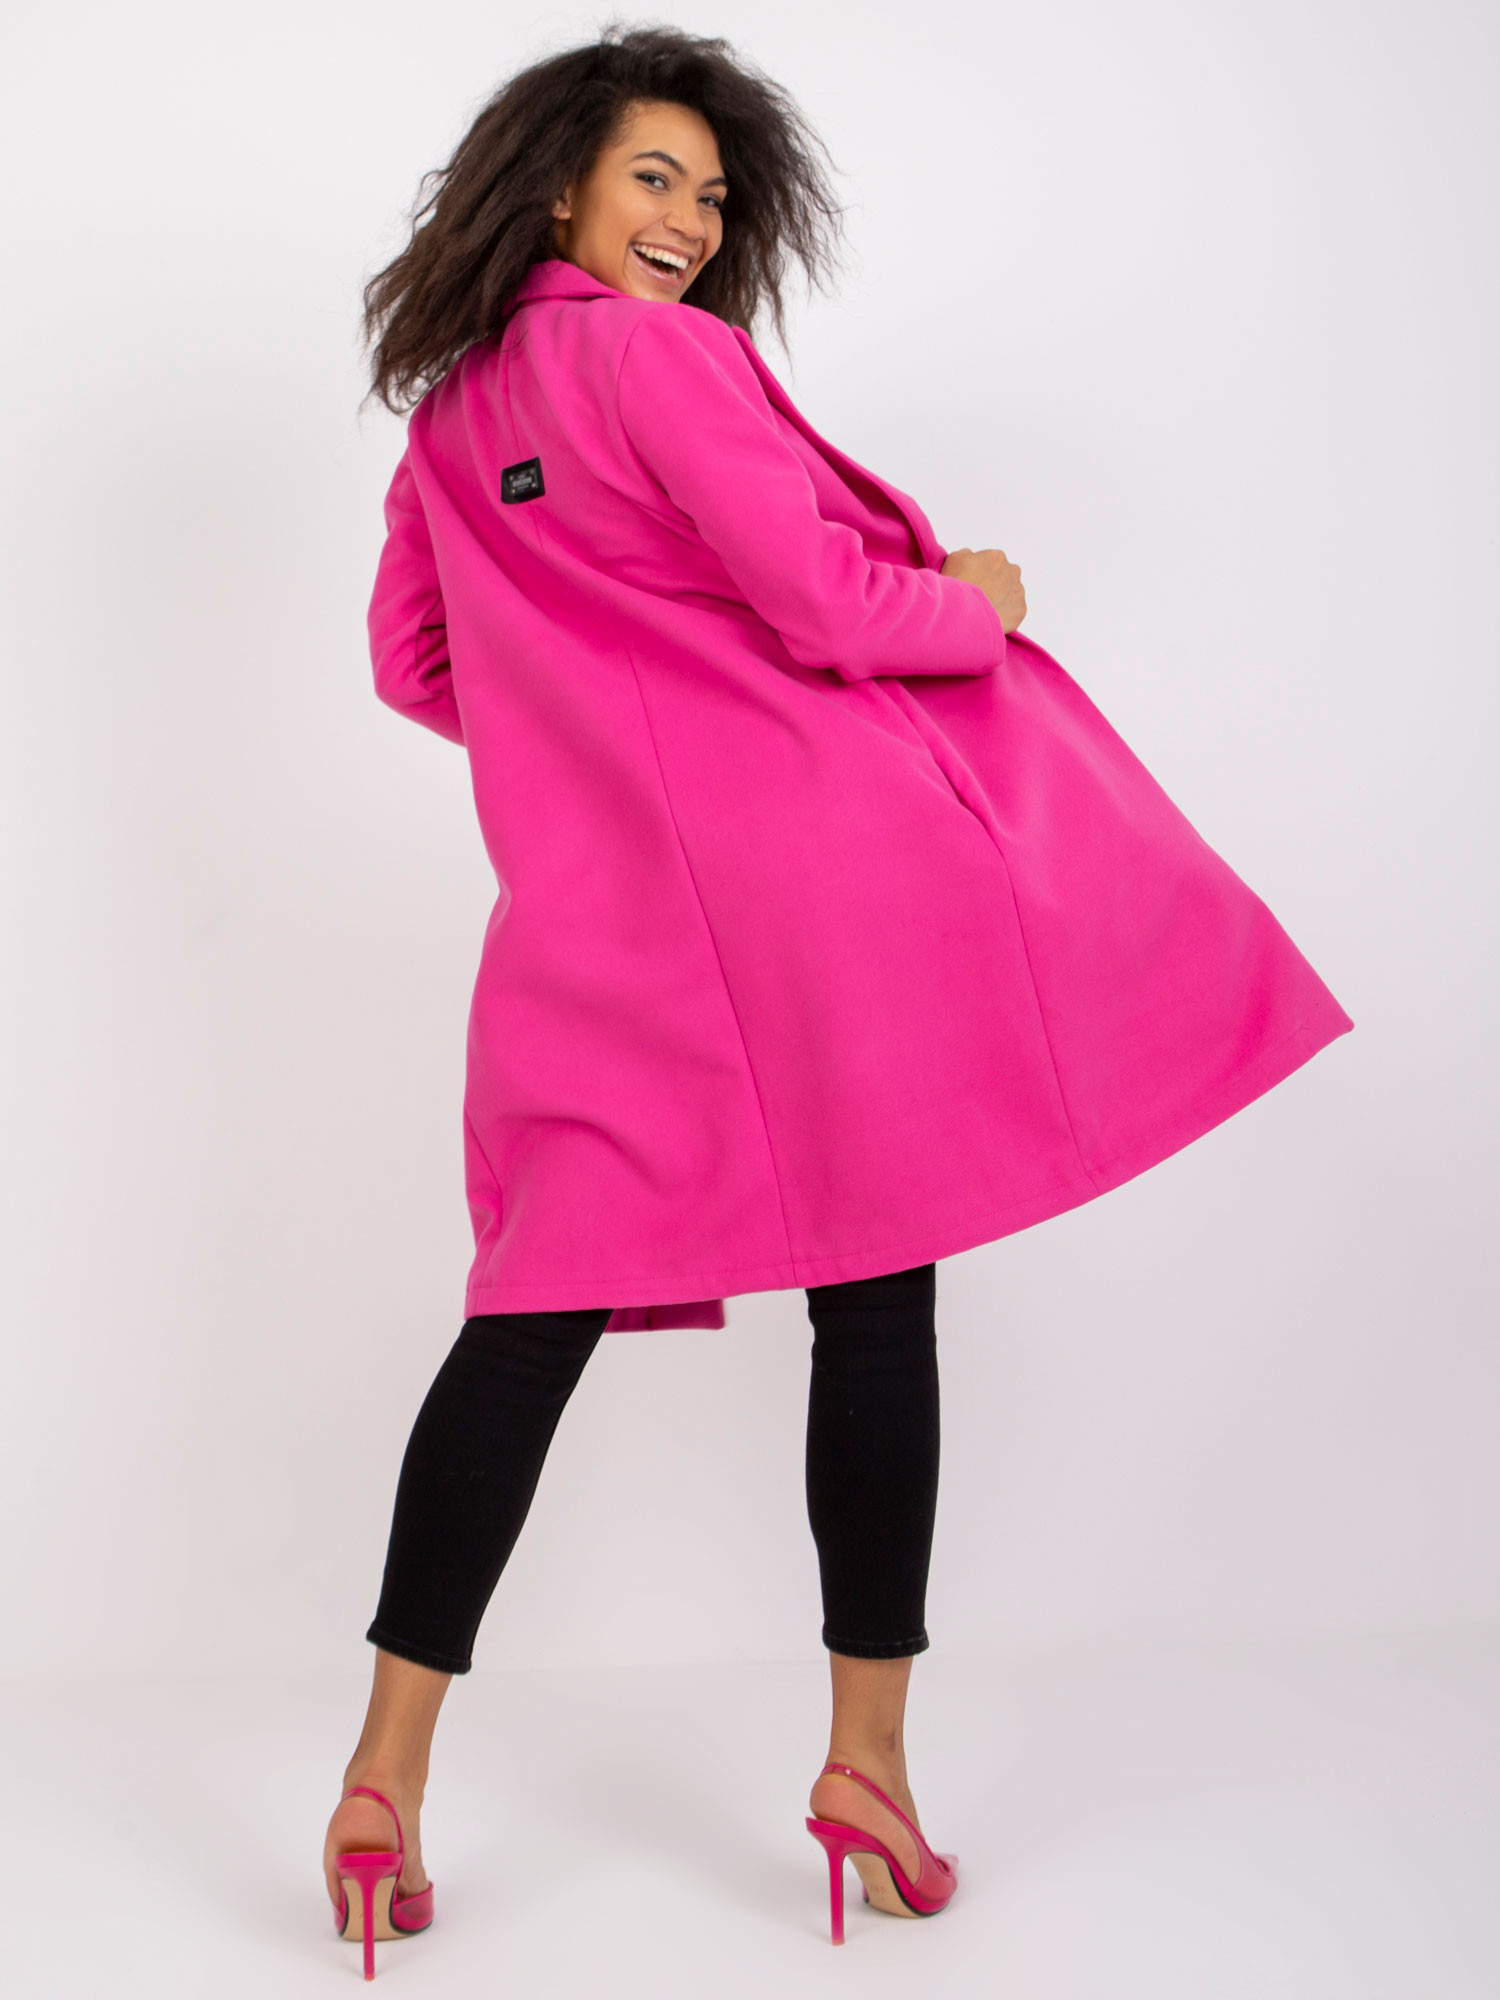 Dámský kabát CHA PL model 17363082 fluo růžový S/M - FPrice